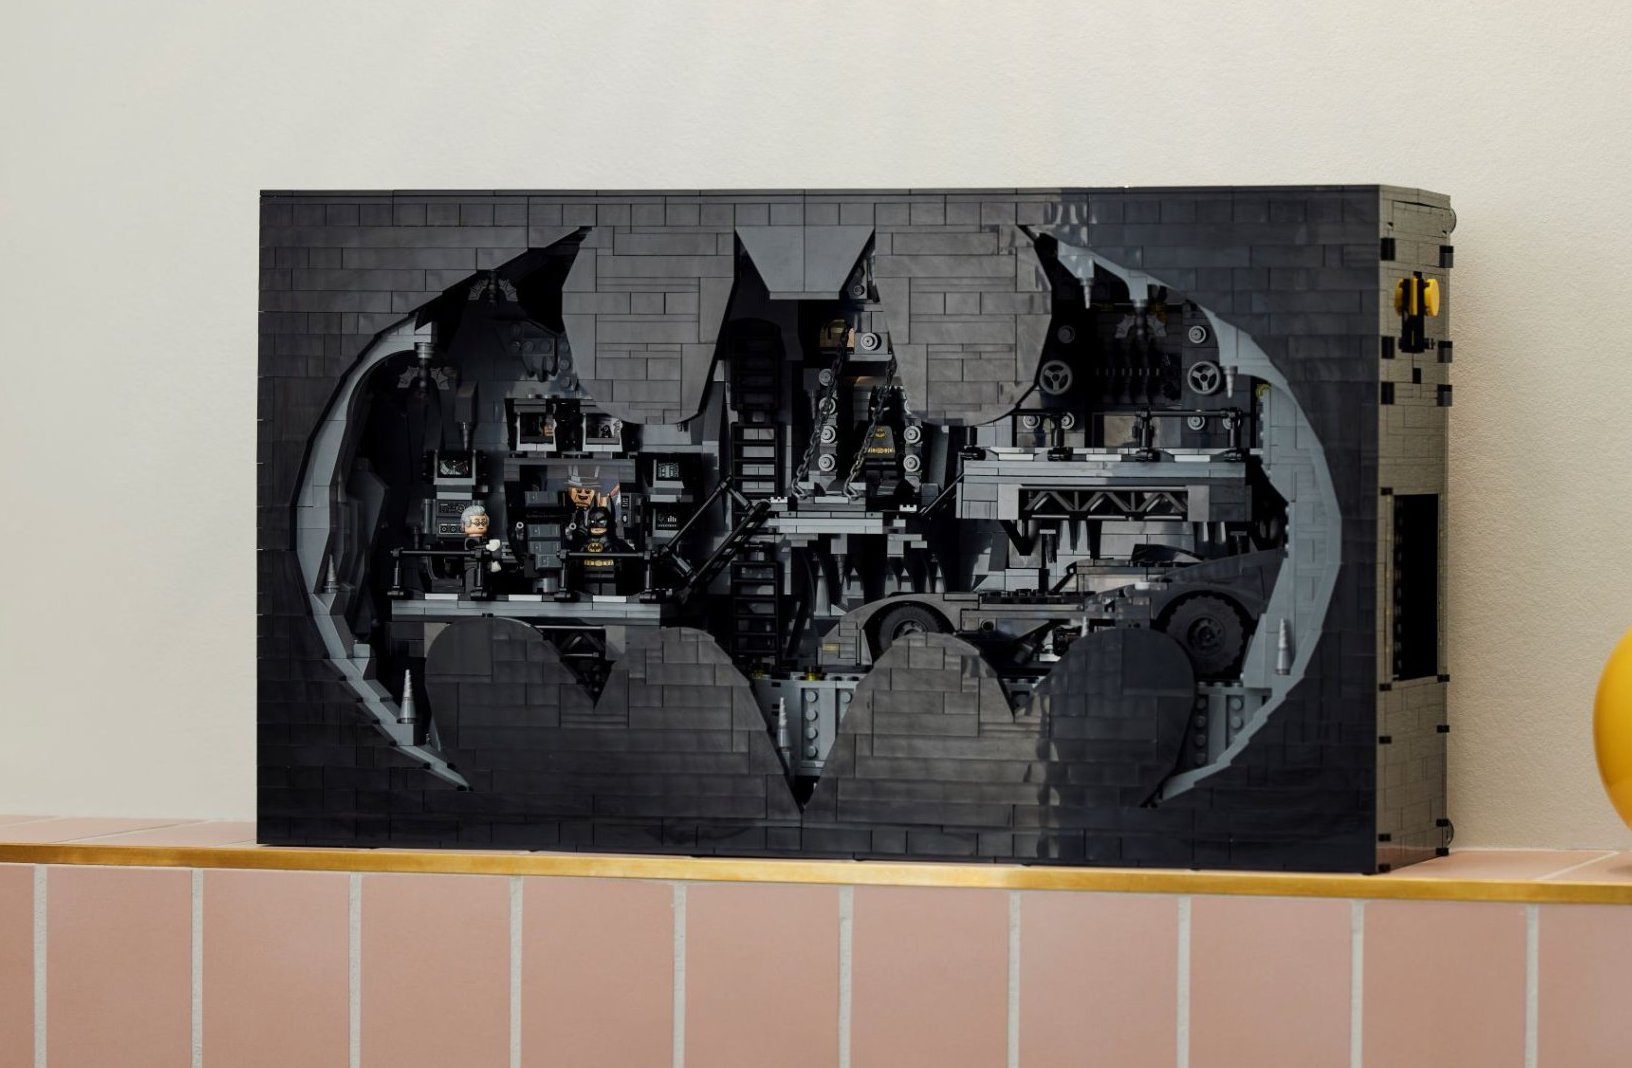 Ce set LEGO Batcave complètement dingue contient 7 figurines 1 Batmobile et un Batsignal géant #6